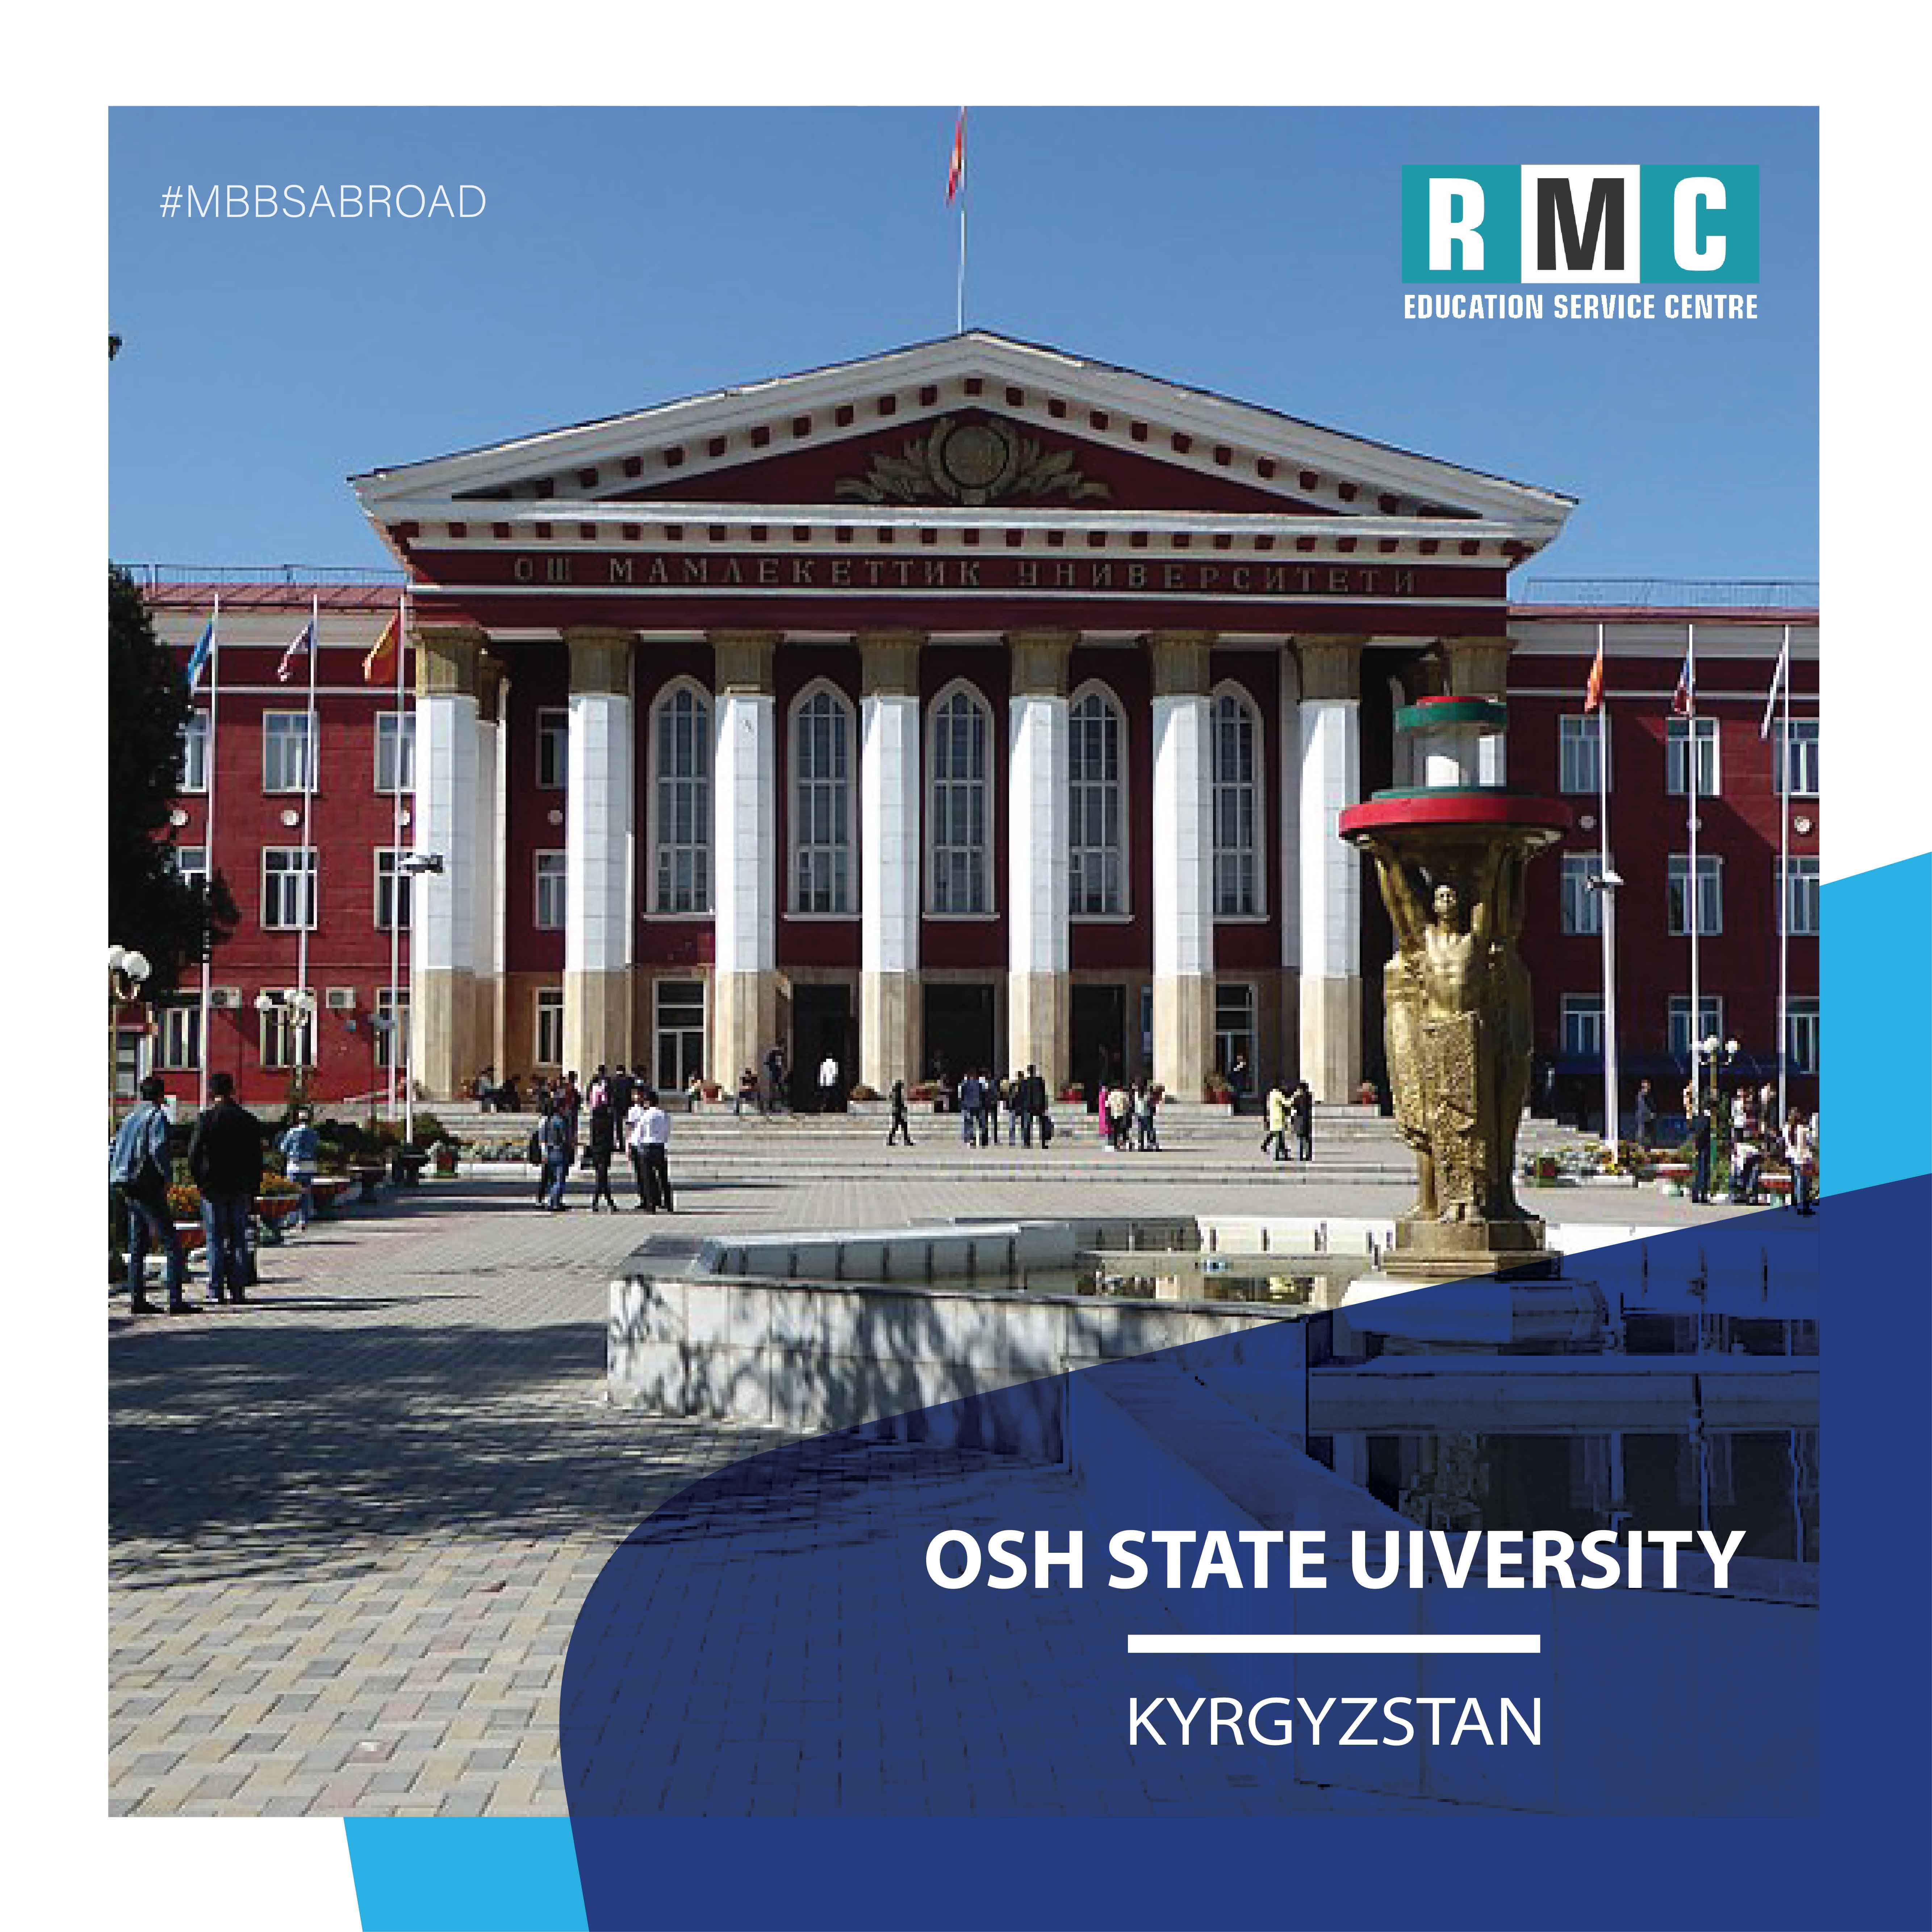 Osh State University